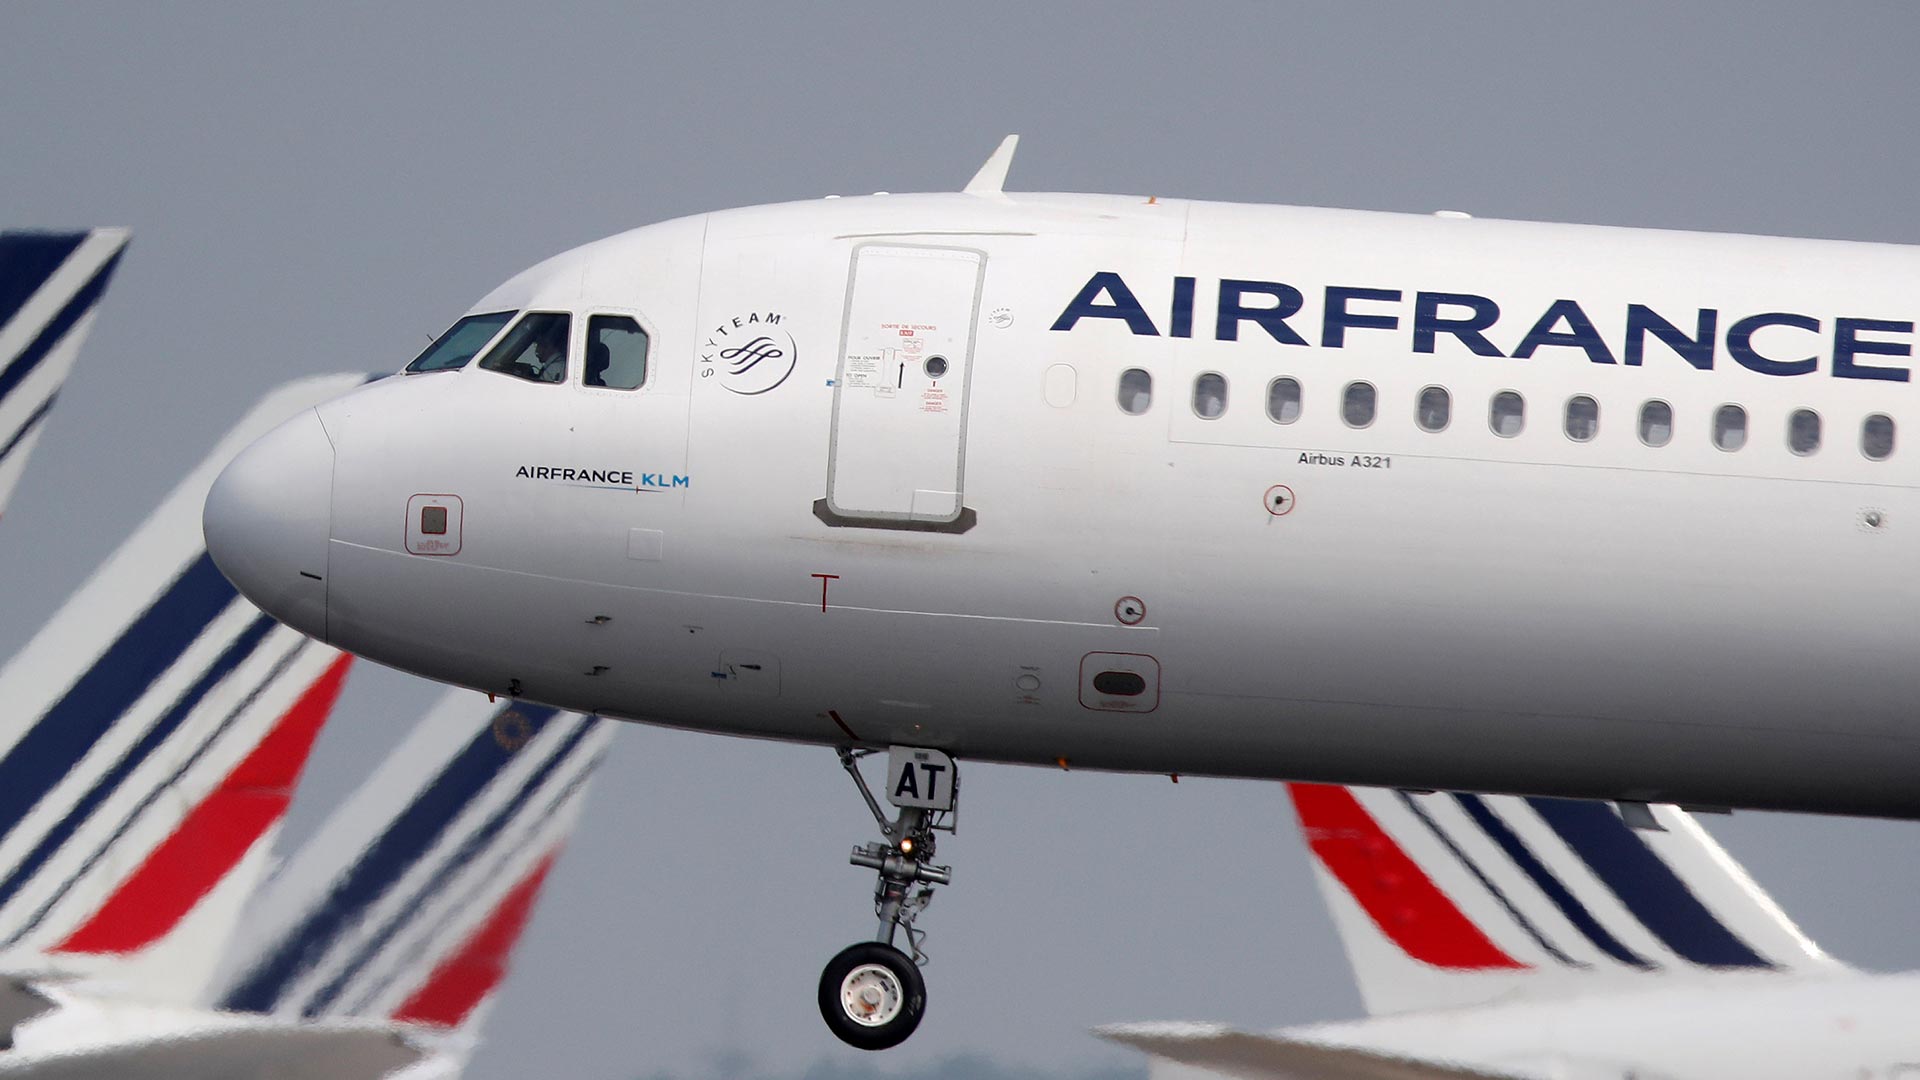 Países Bajos admite que su entrada en Air France-KLM no fue "ortodoxa"